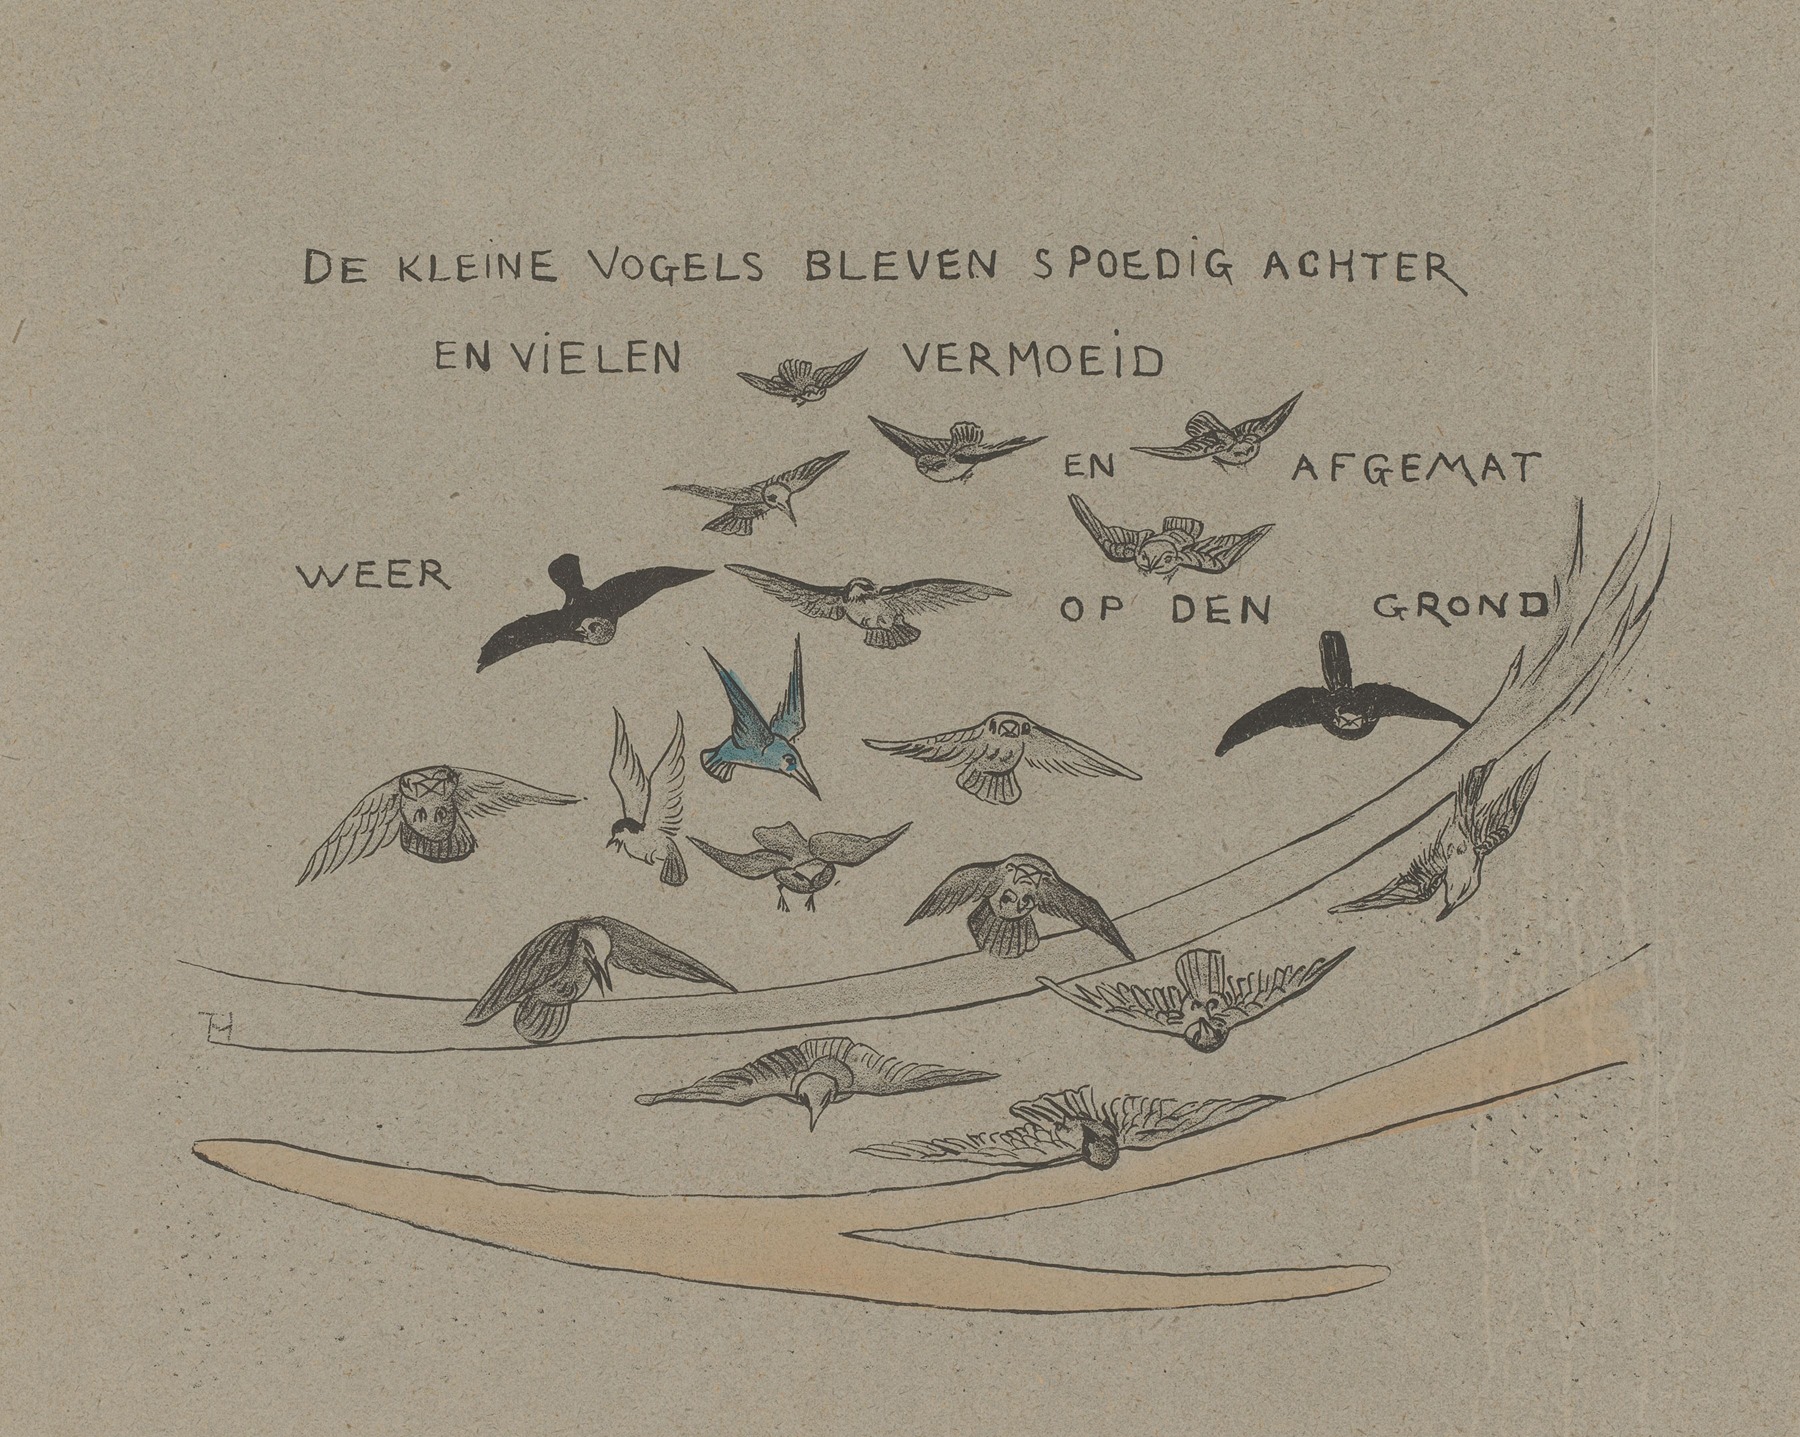 Theo van Hoytema - De kleine vogels bleven spoedig achter en vielen vermoeid en afgemat weer op den grond